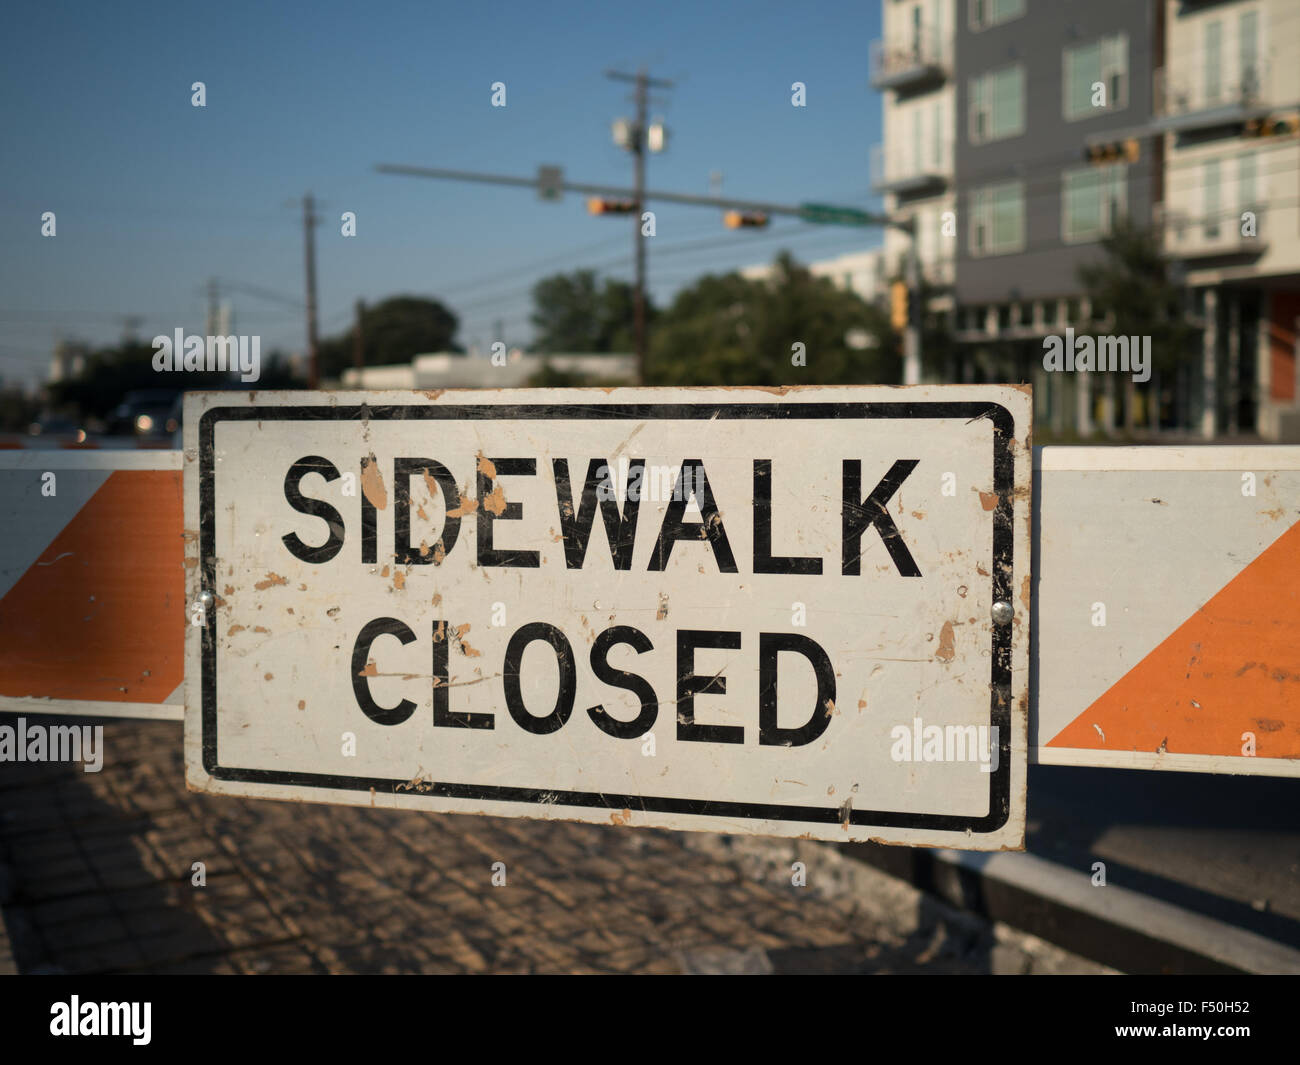 'Sidewalk Orange fermé' signe sur les rues d'Austin, Texas Banque D'Images